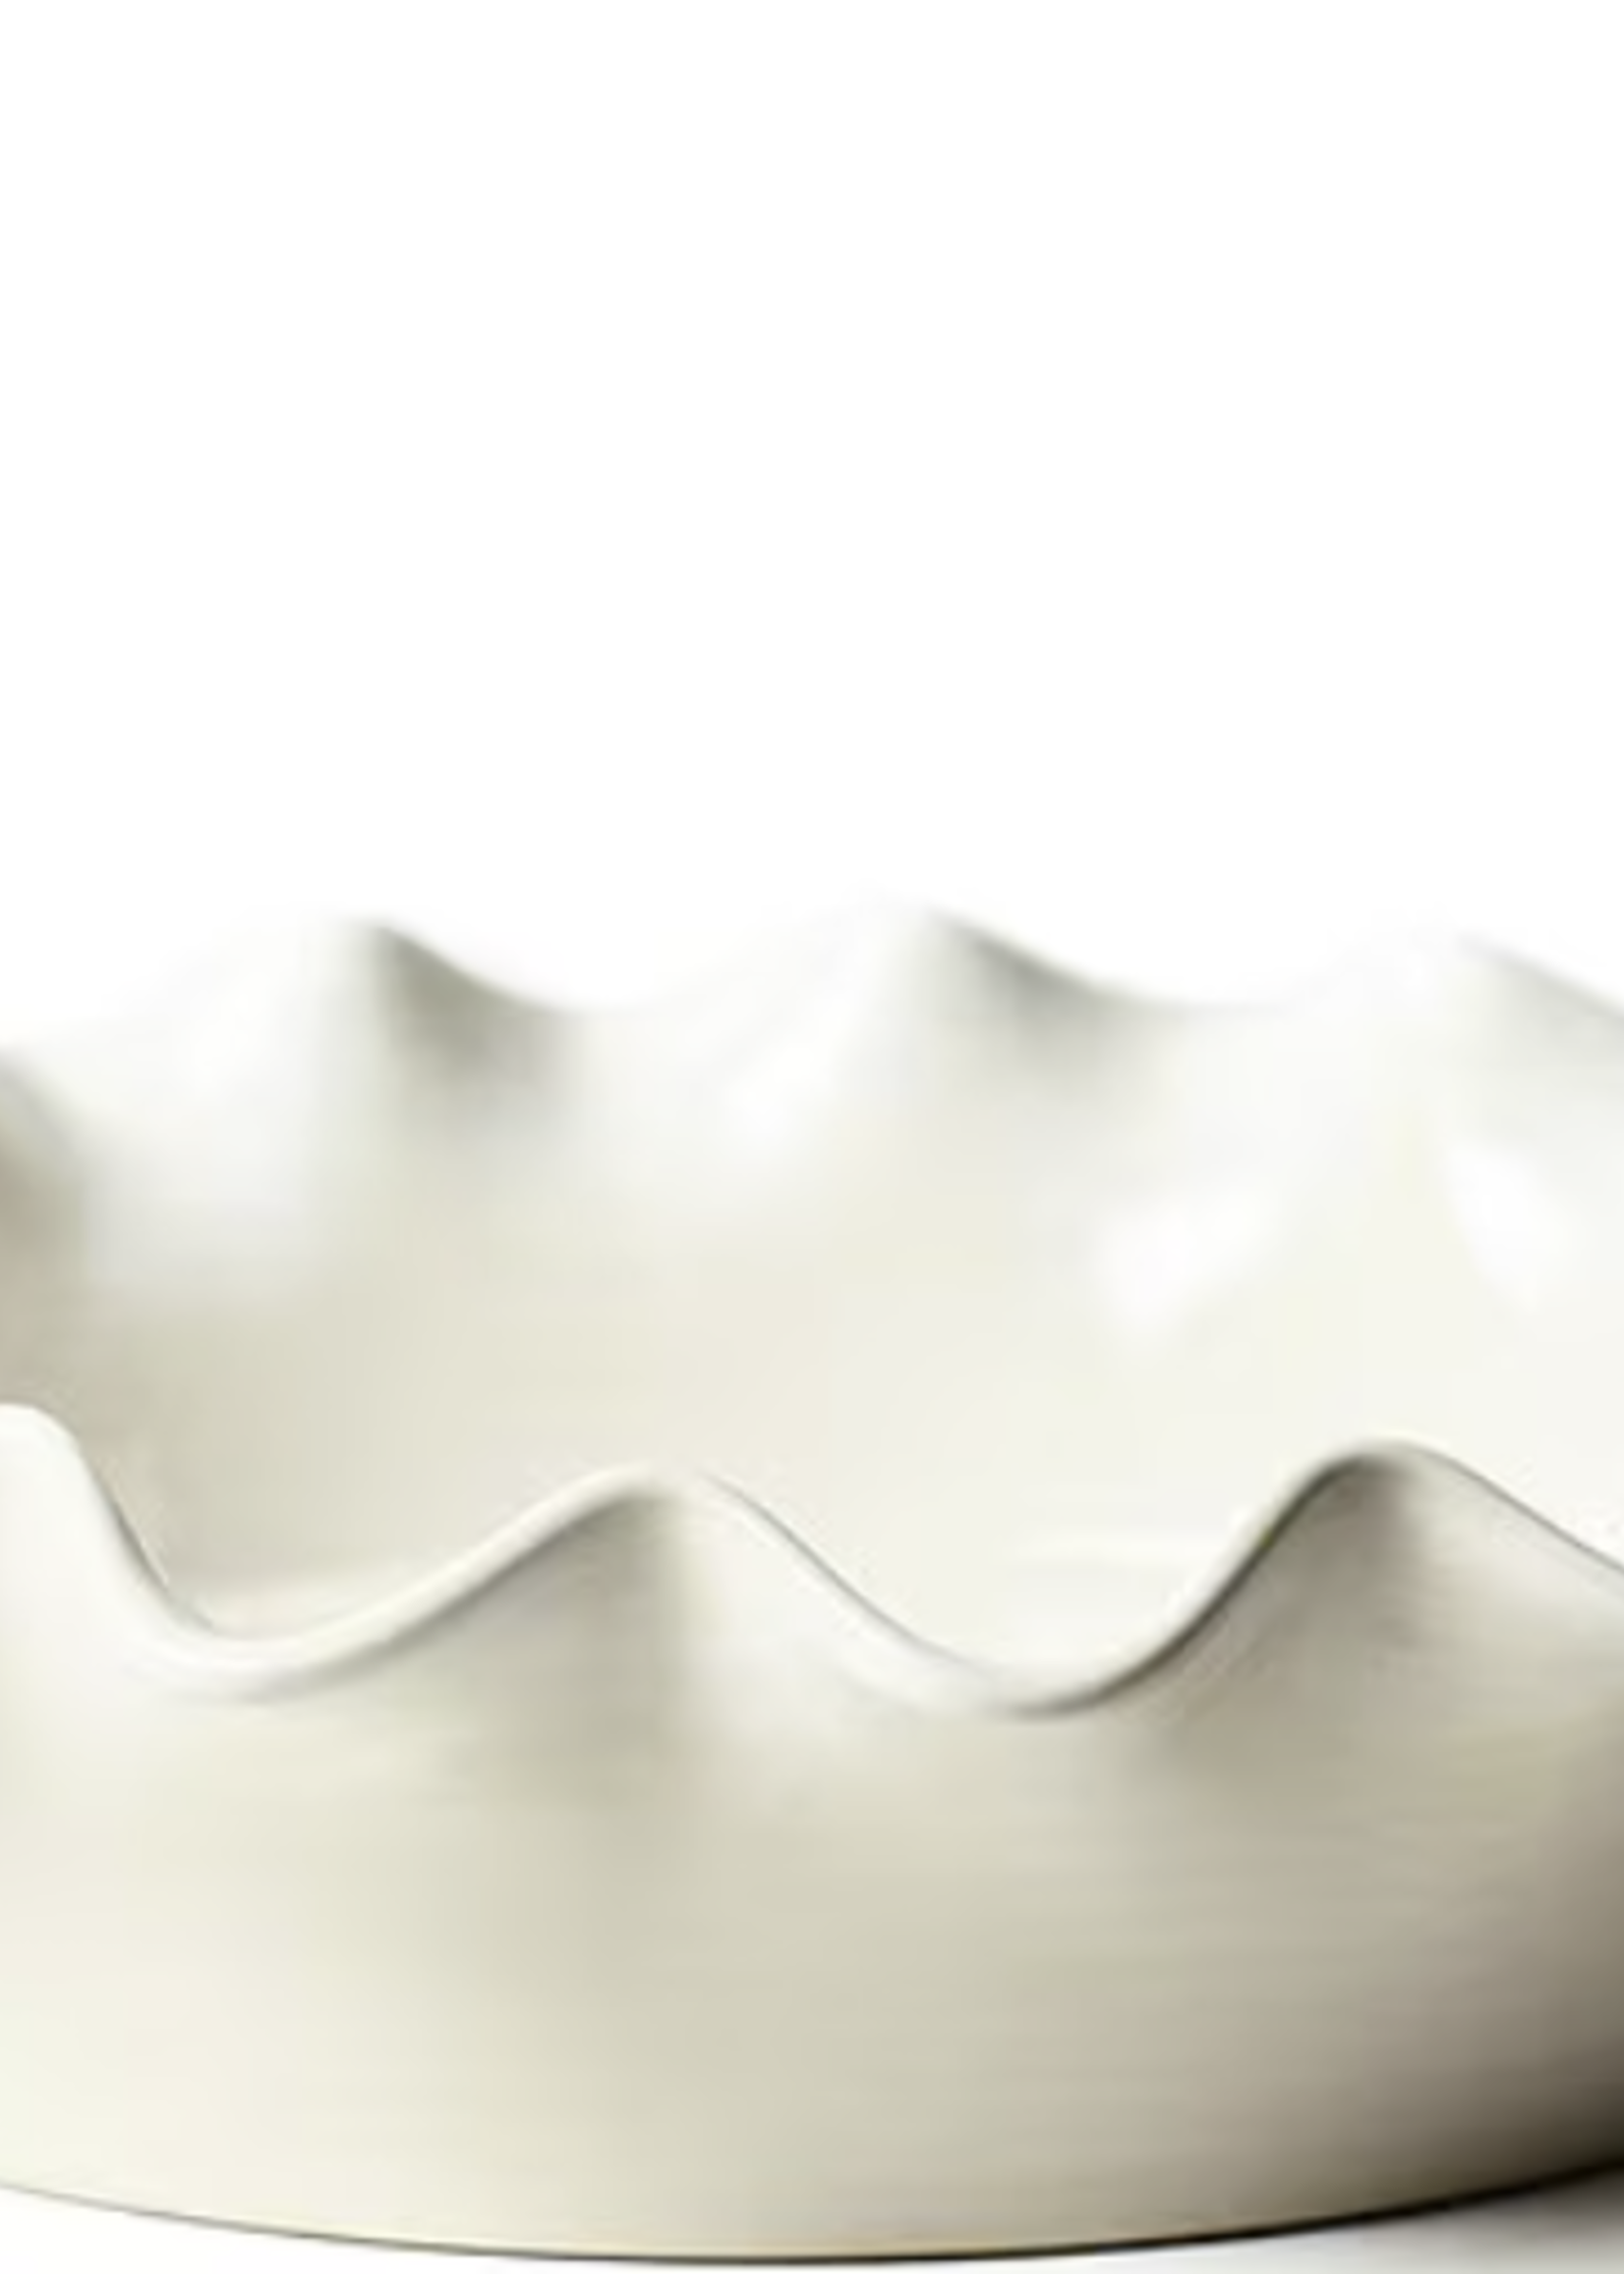 Coton Colors Signature Ruffle Pie Dish White